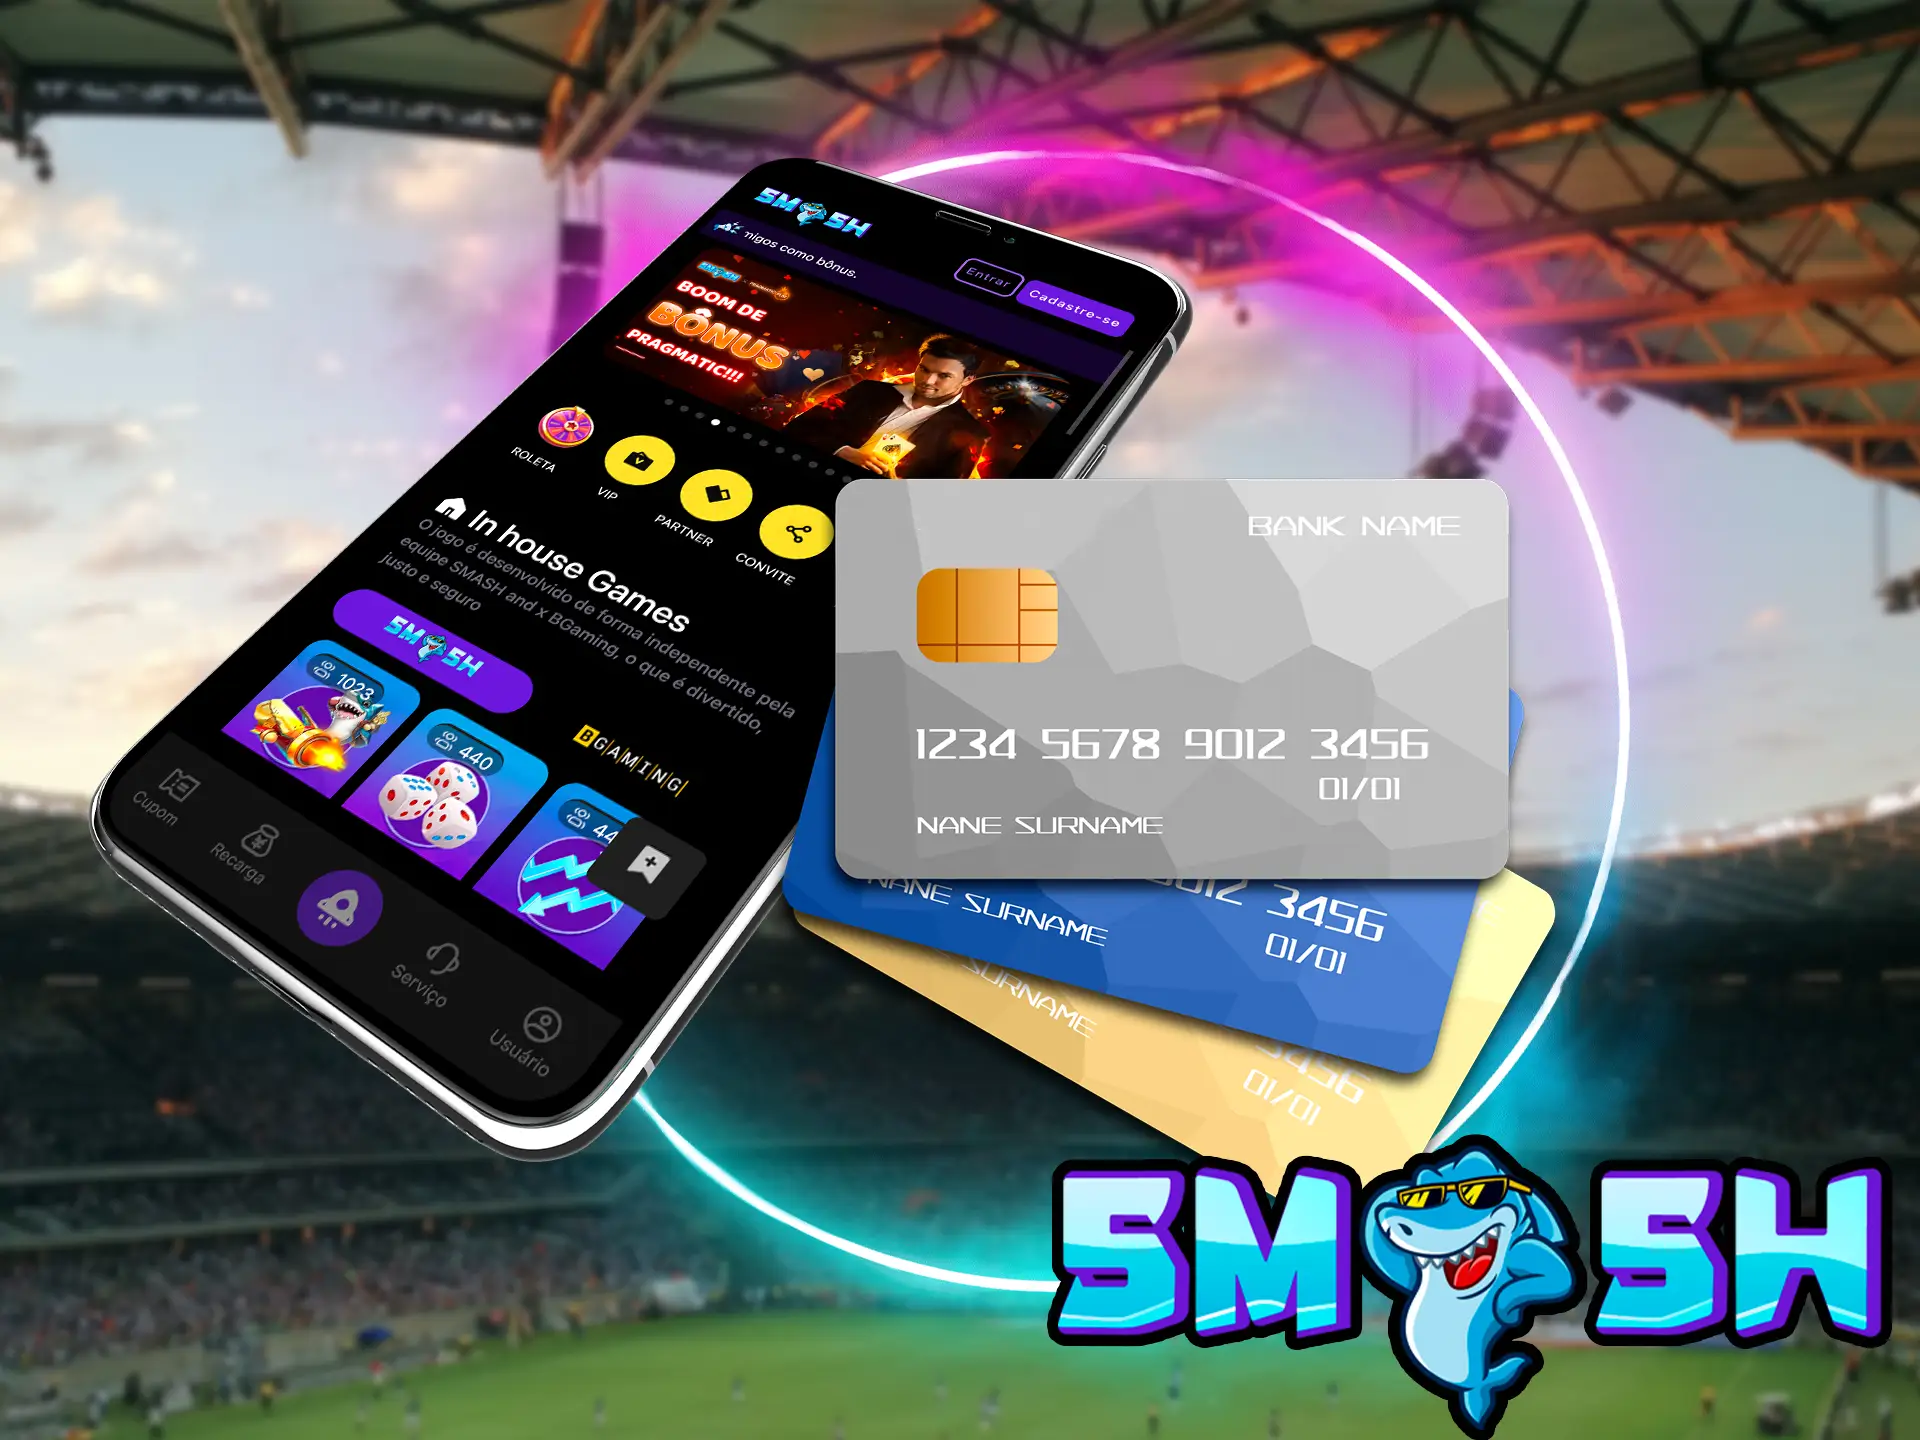 Graças à abundância de sistemas de pagamento, você pode reabastecer facilmente sua conta virtual com um sistema conveniente no Smashup.